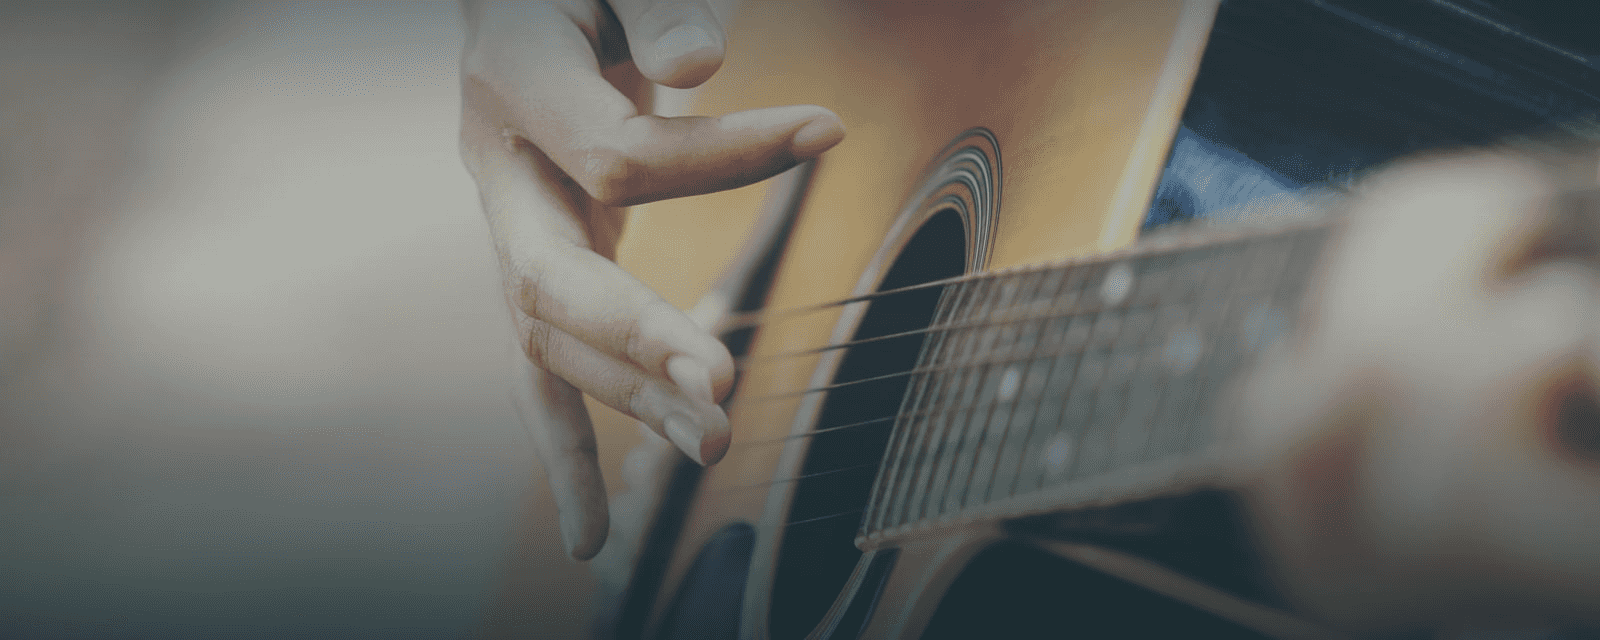 Gitarrenunterricht